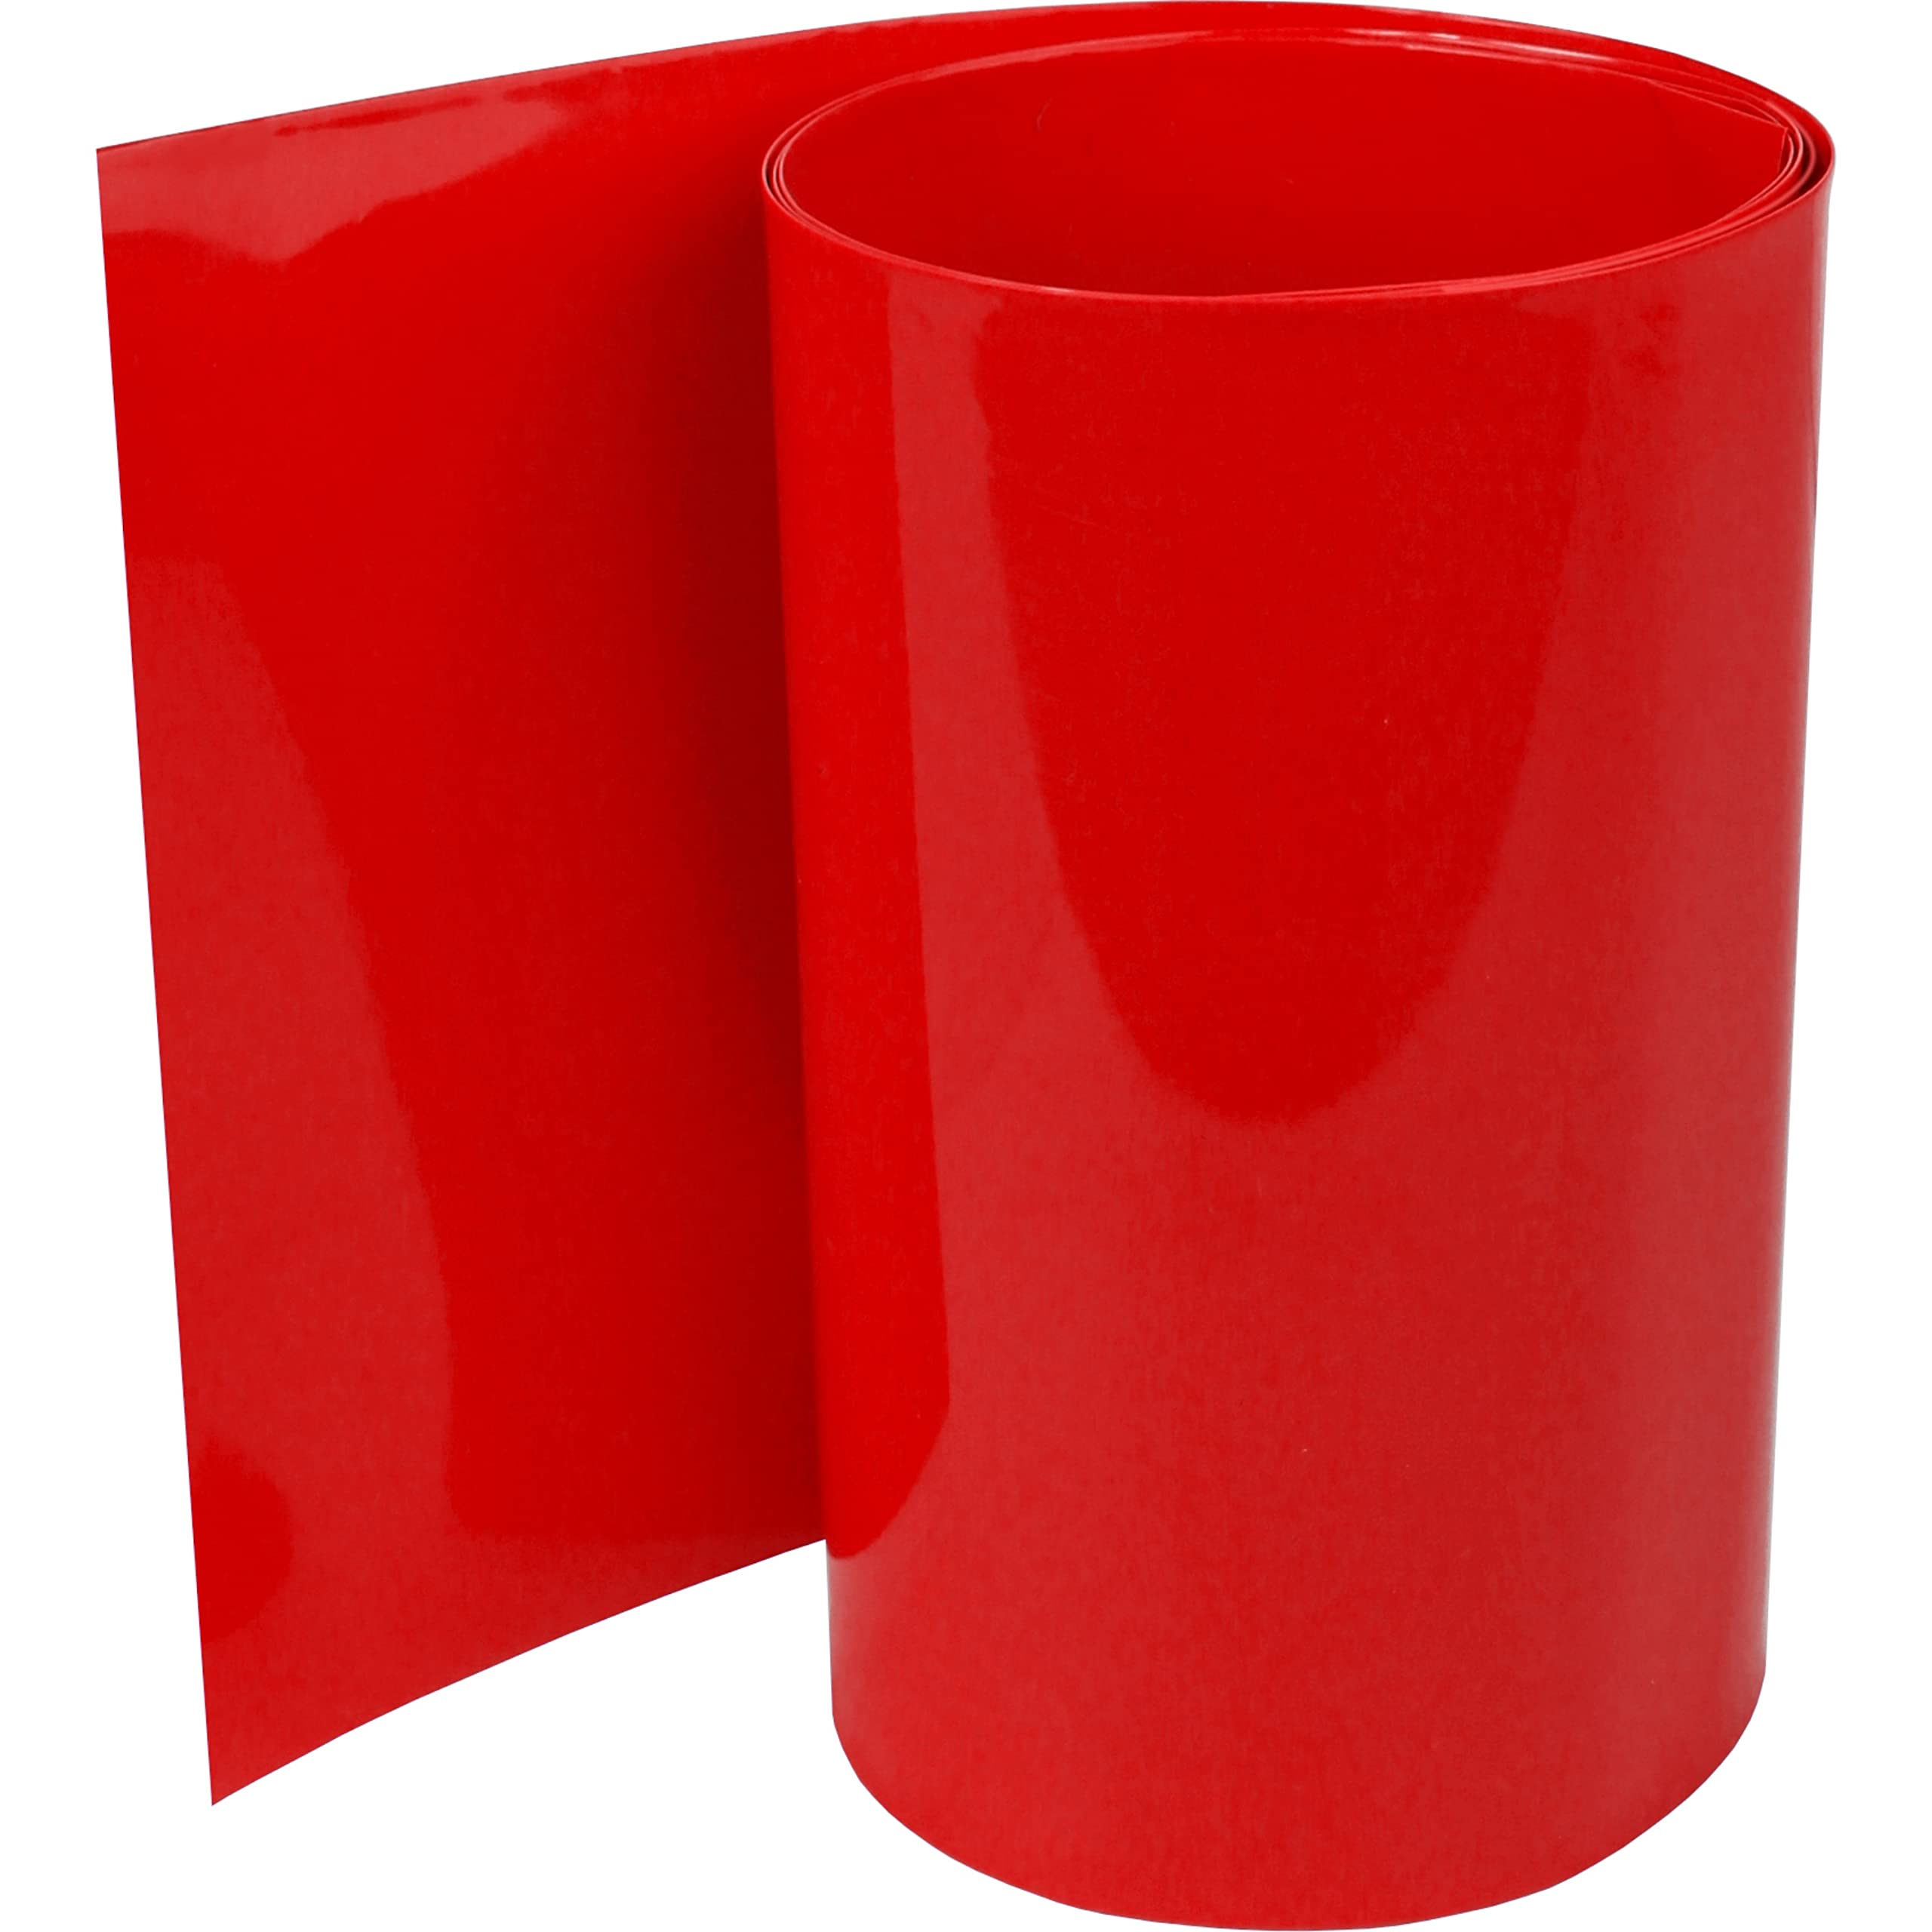 ISOLATECH PVC Schrumpfschlauch Meterware rot ohne Kleber Flachmaß 100mm (Ø63,7mm) 10 Meter Schrumpfverhältnis 2:1 Set zum Isolieren von 18650 Akku Batterien unbeschriftet (Ø63,7mm 10 Meter)